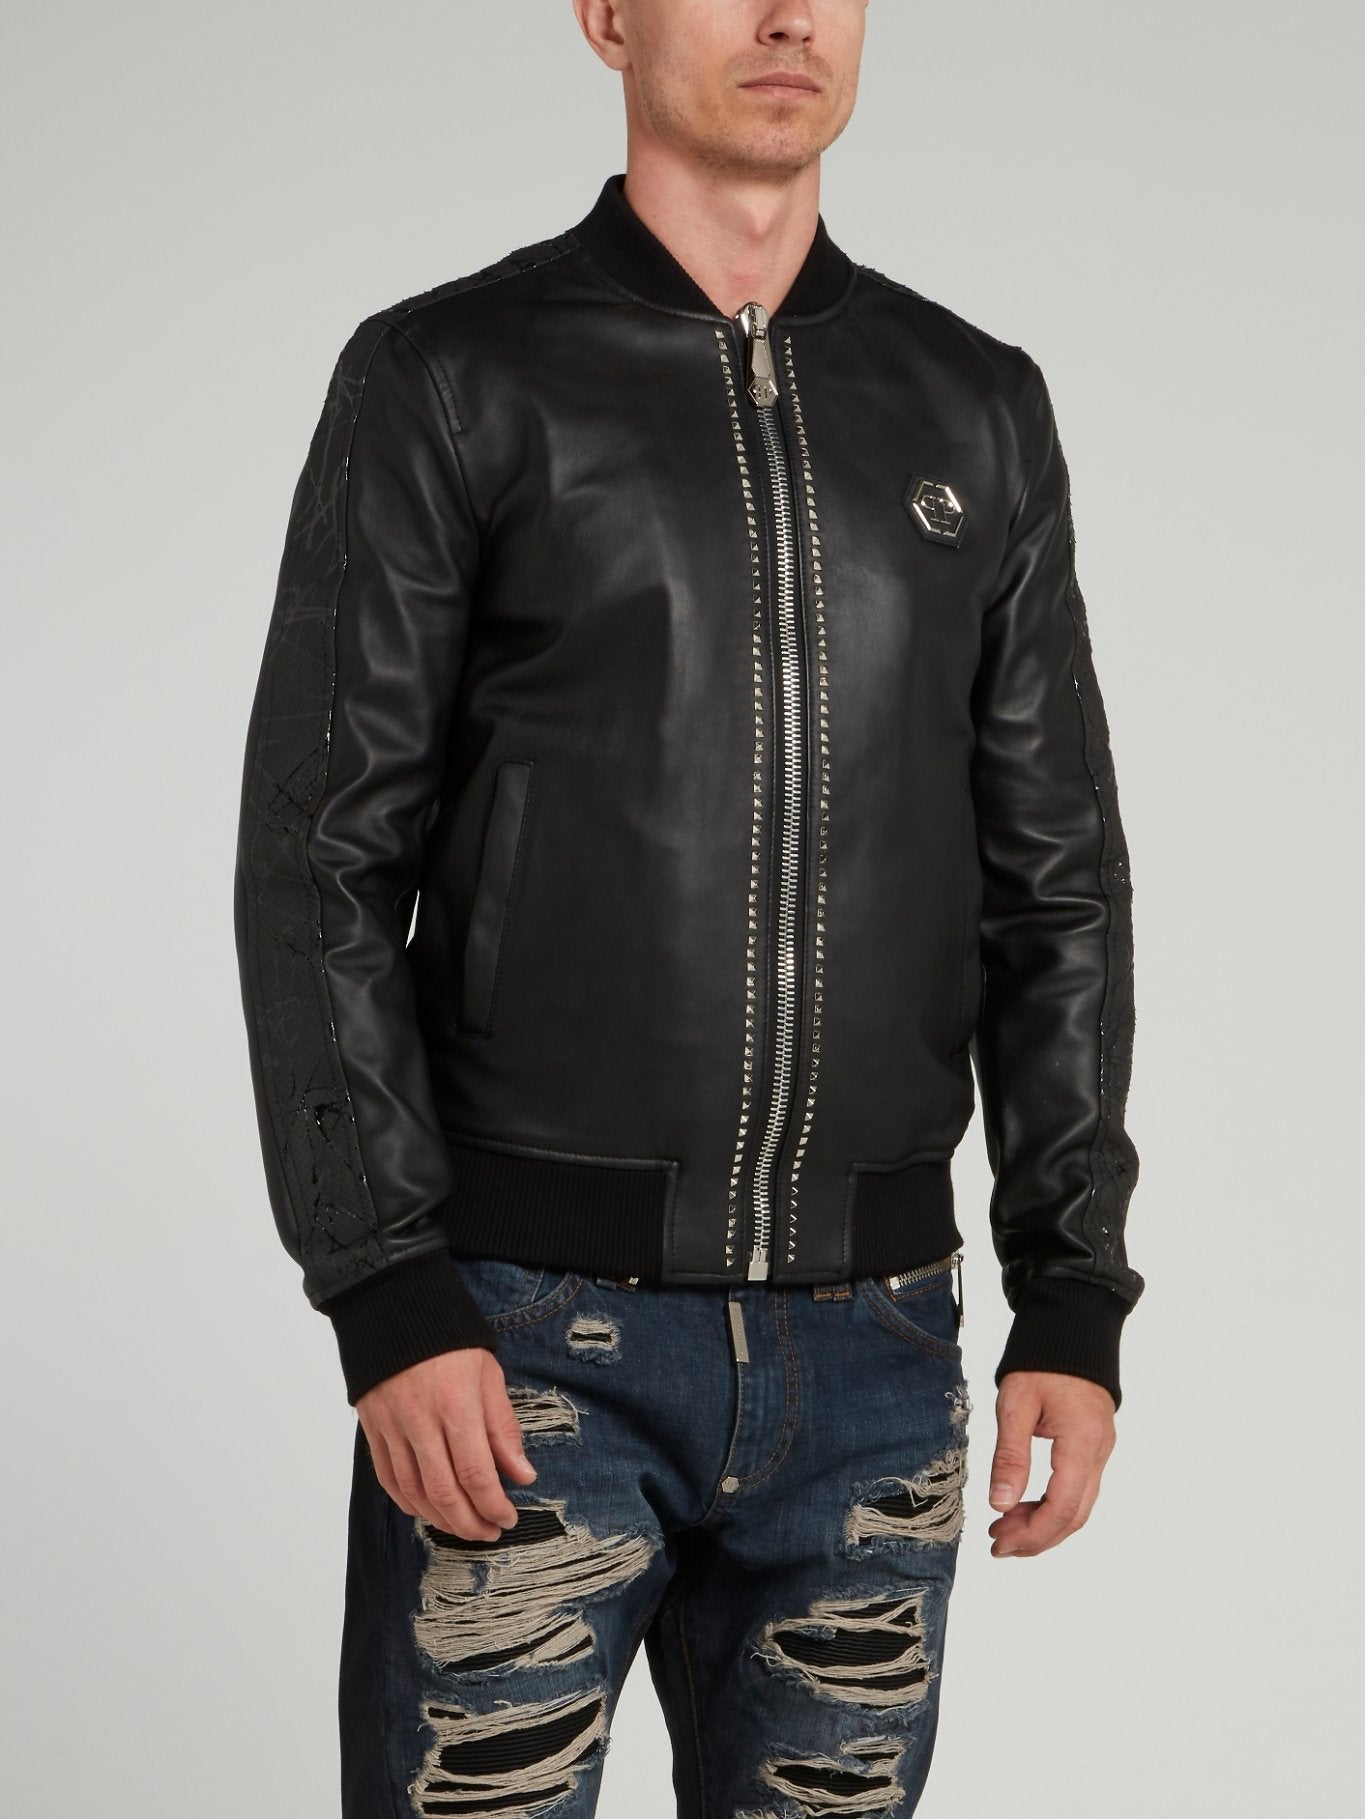 Studded Leather Bomber Jacket